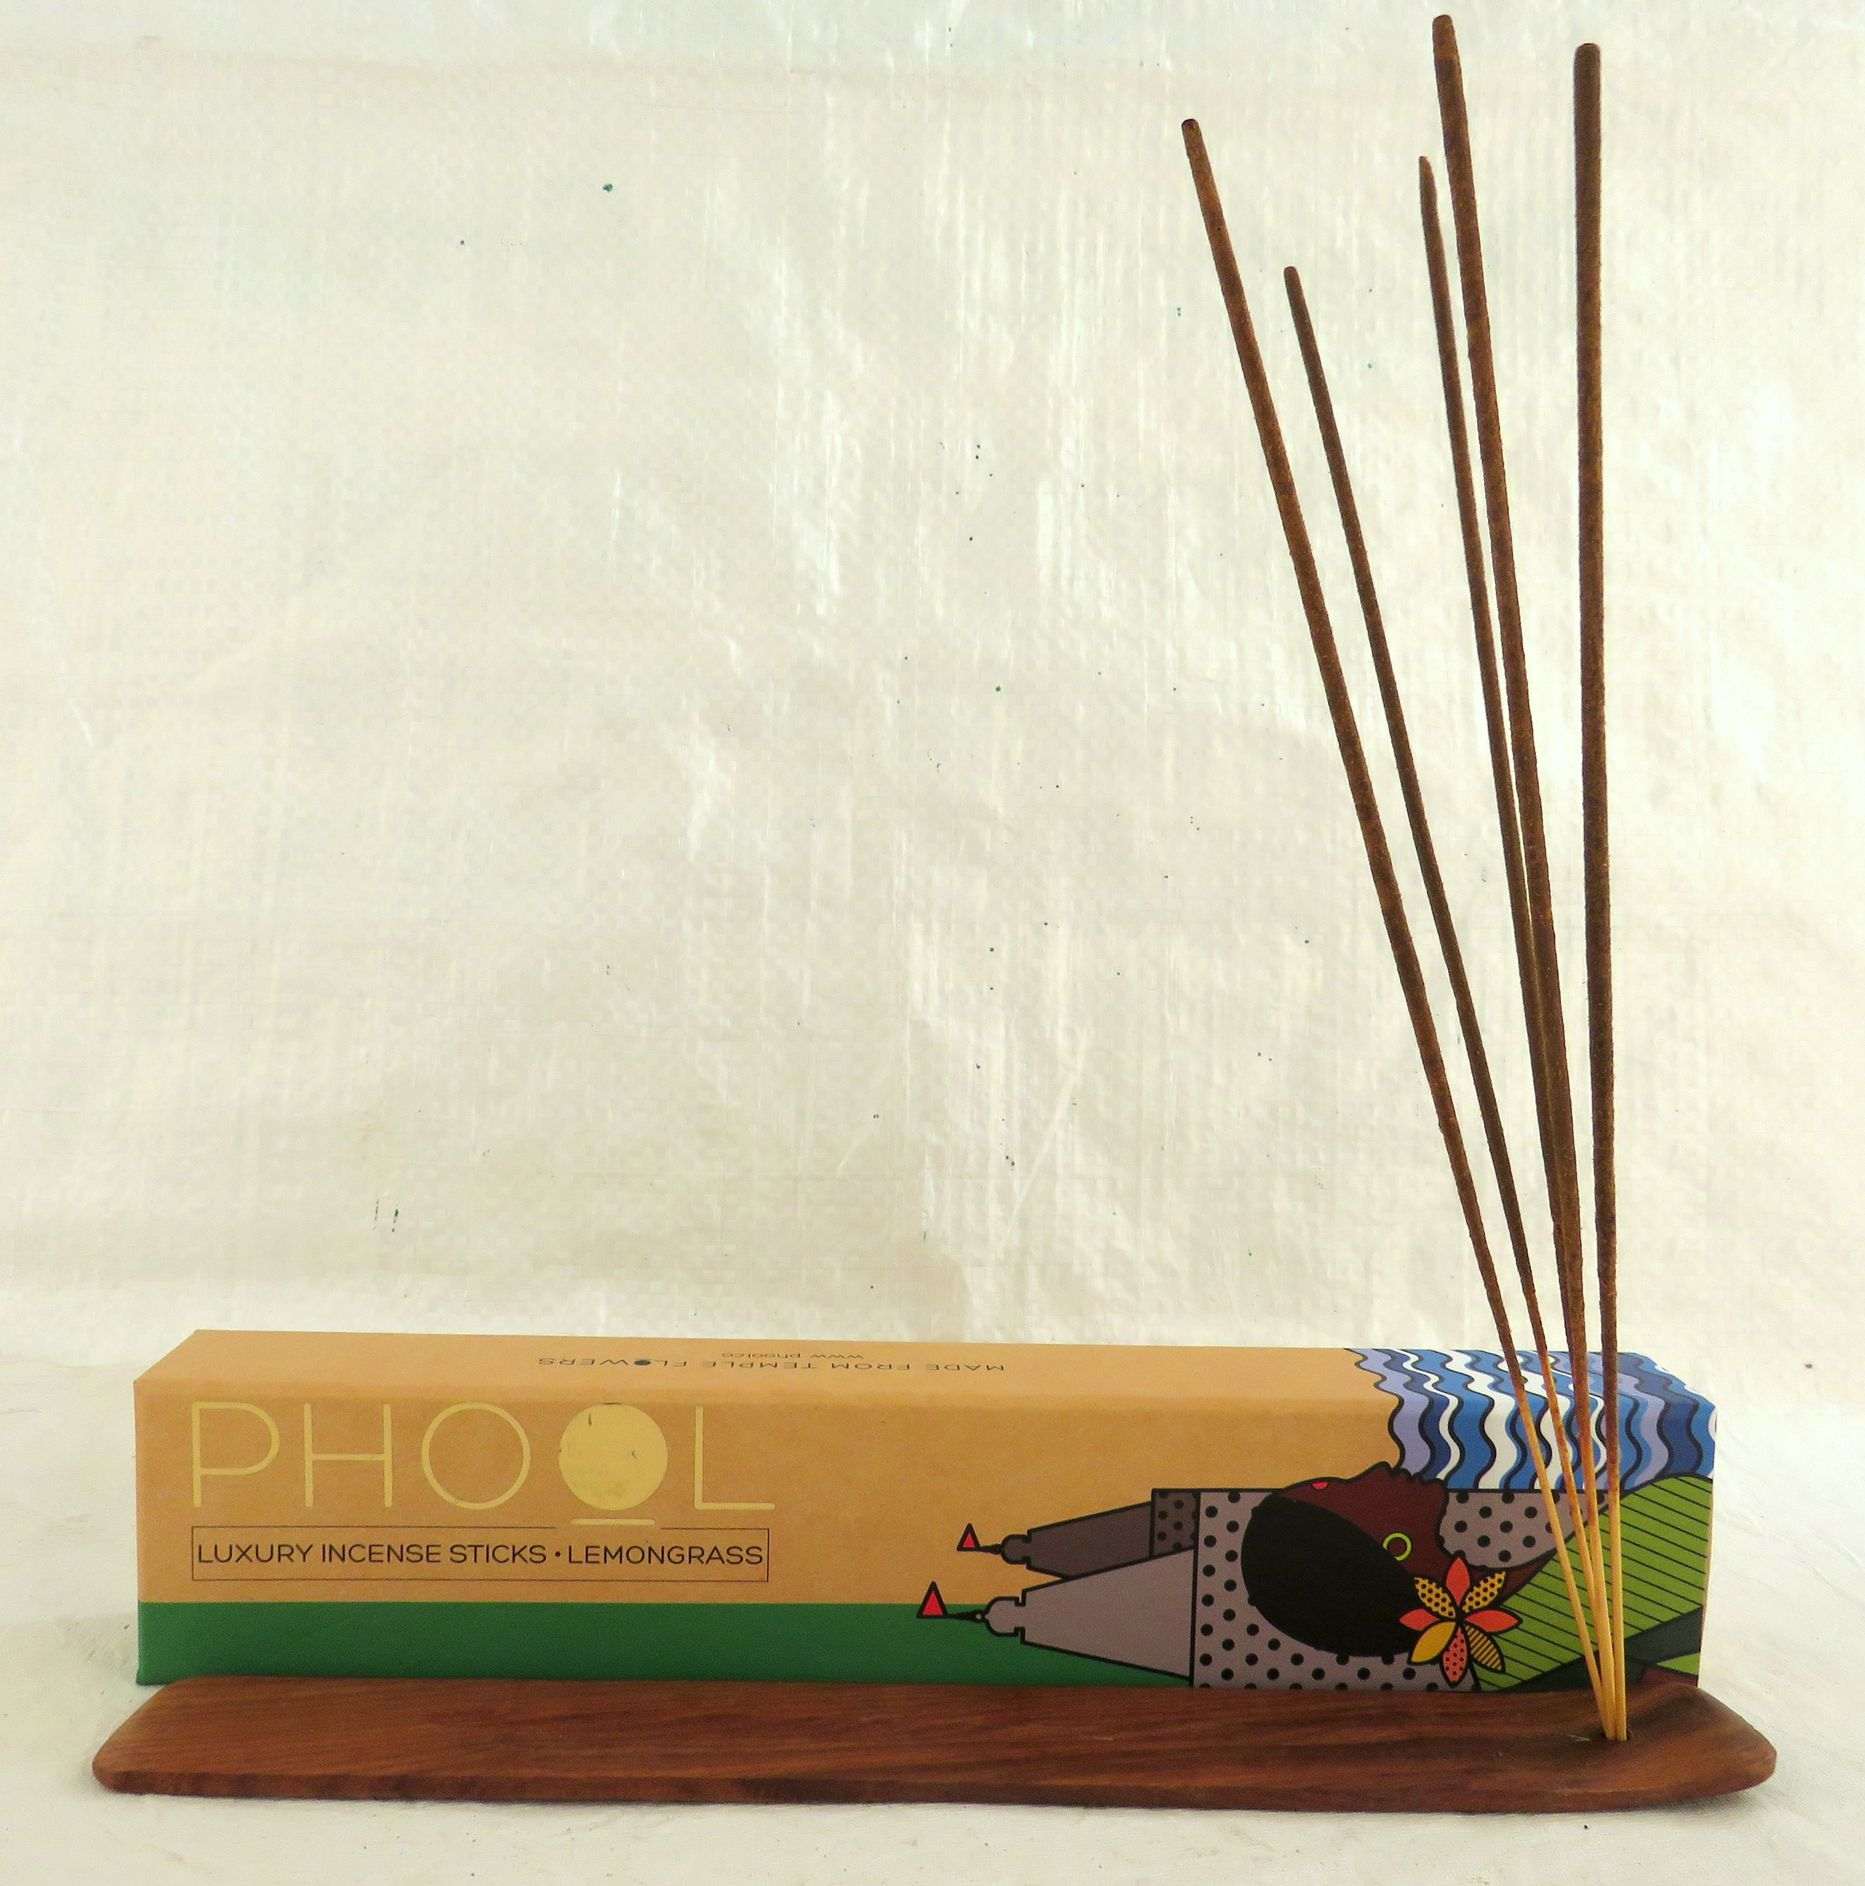 PHOOL Luxury Incense Sticks